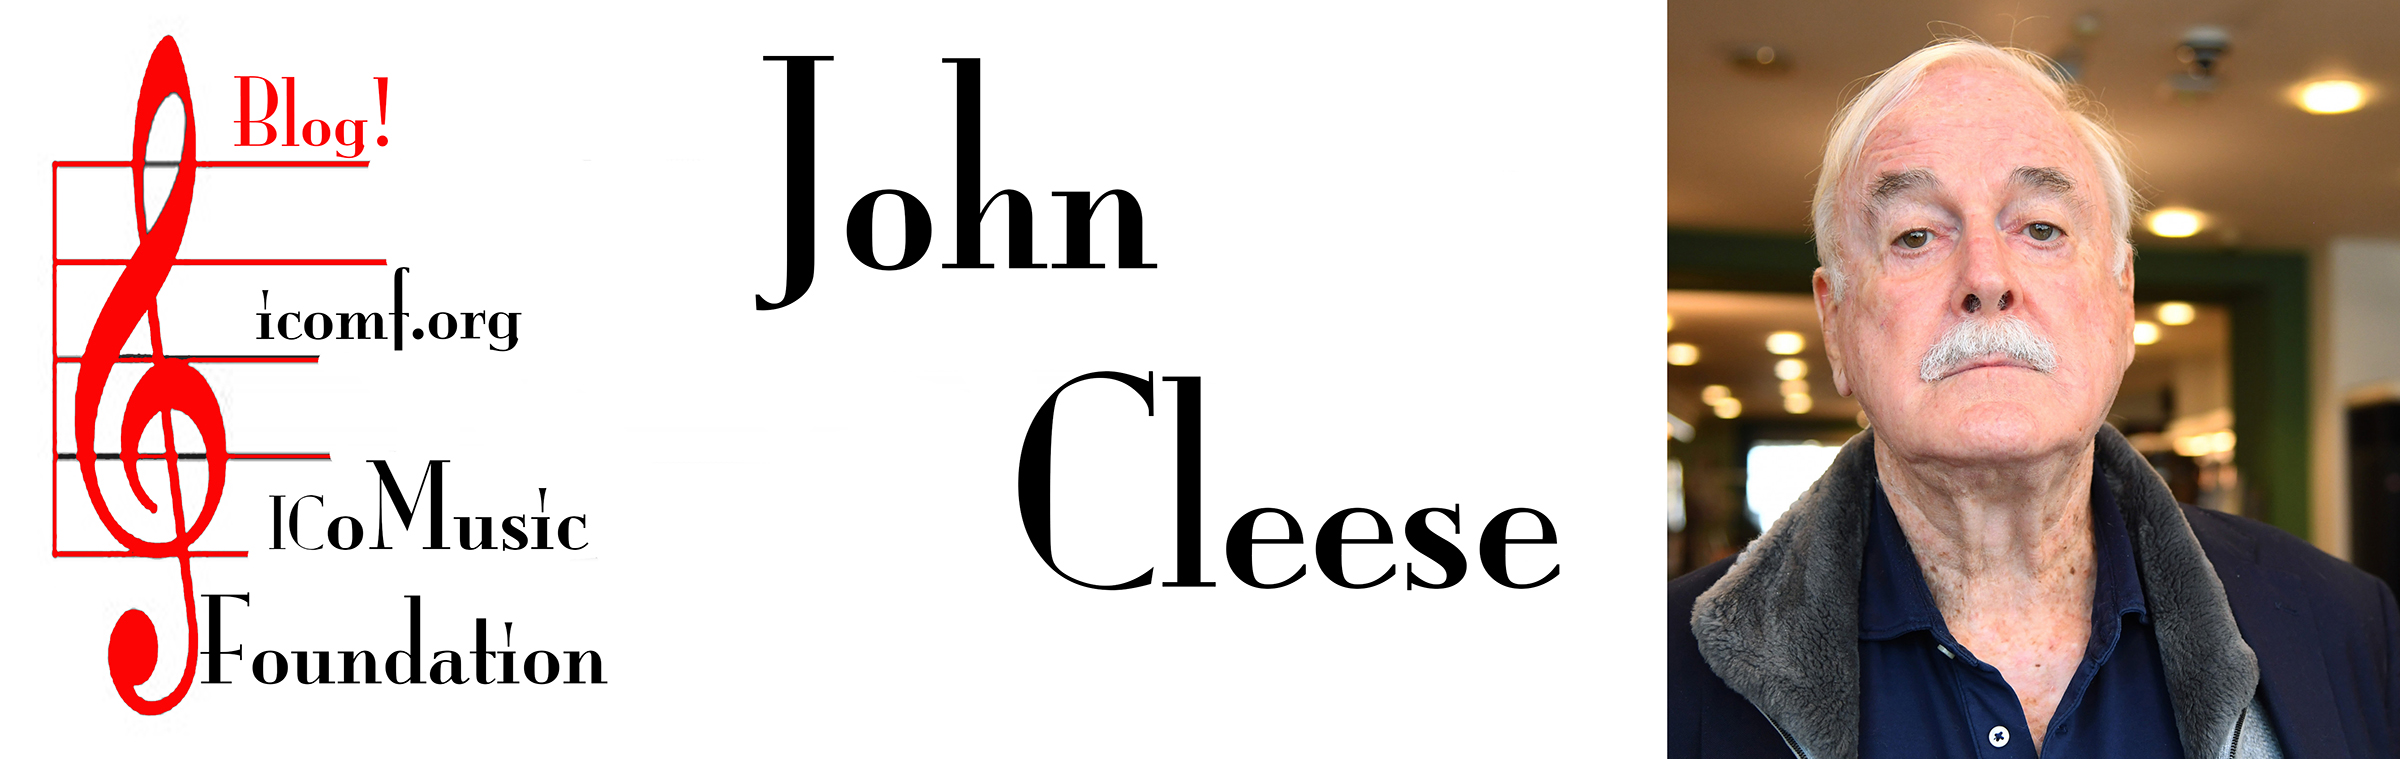 John Cleese Blog Banner